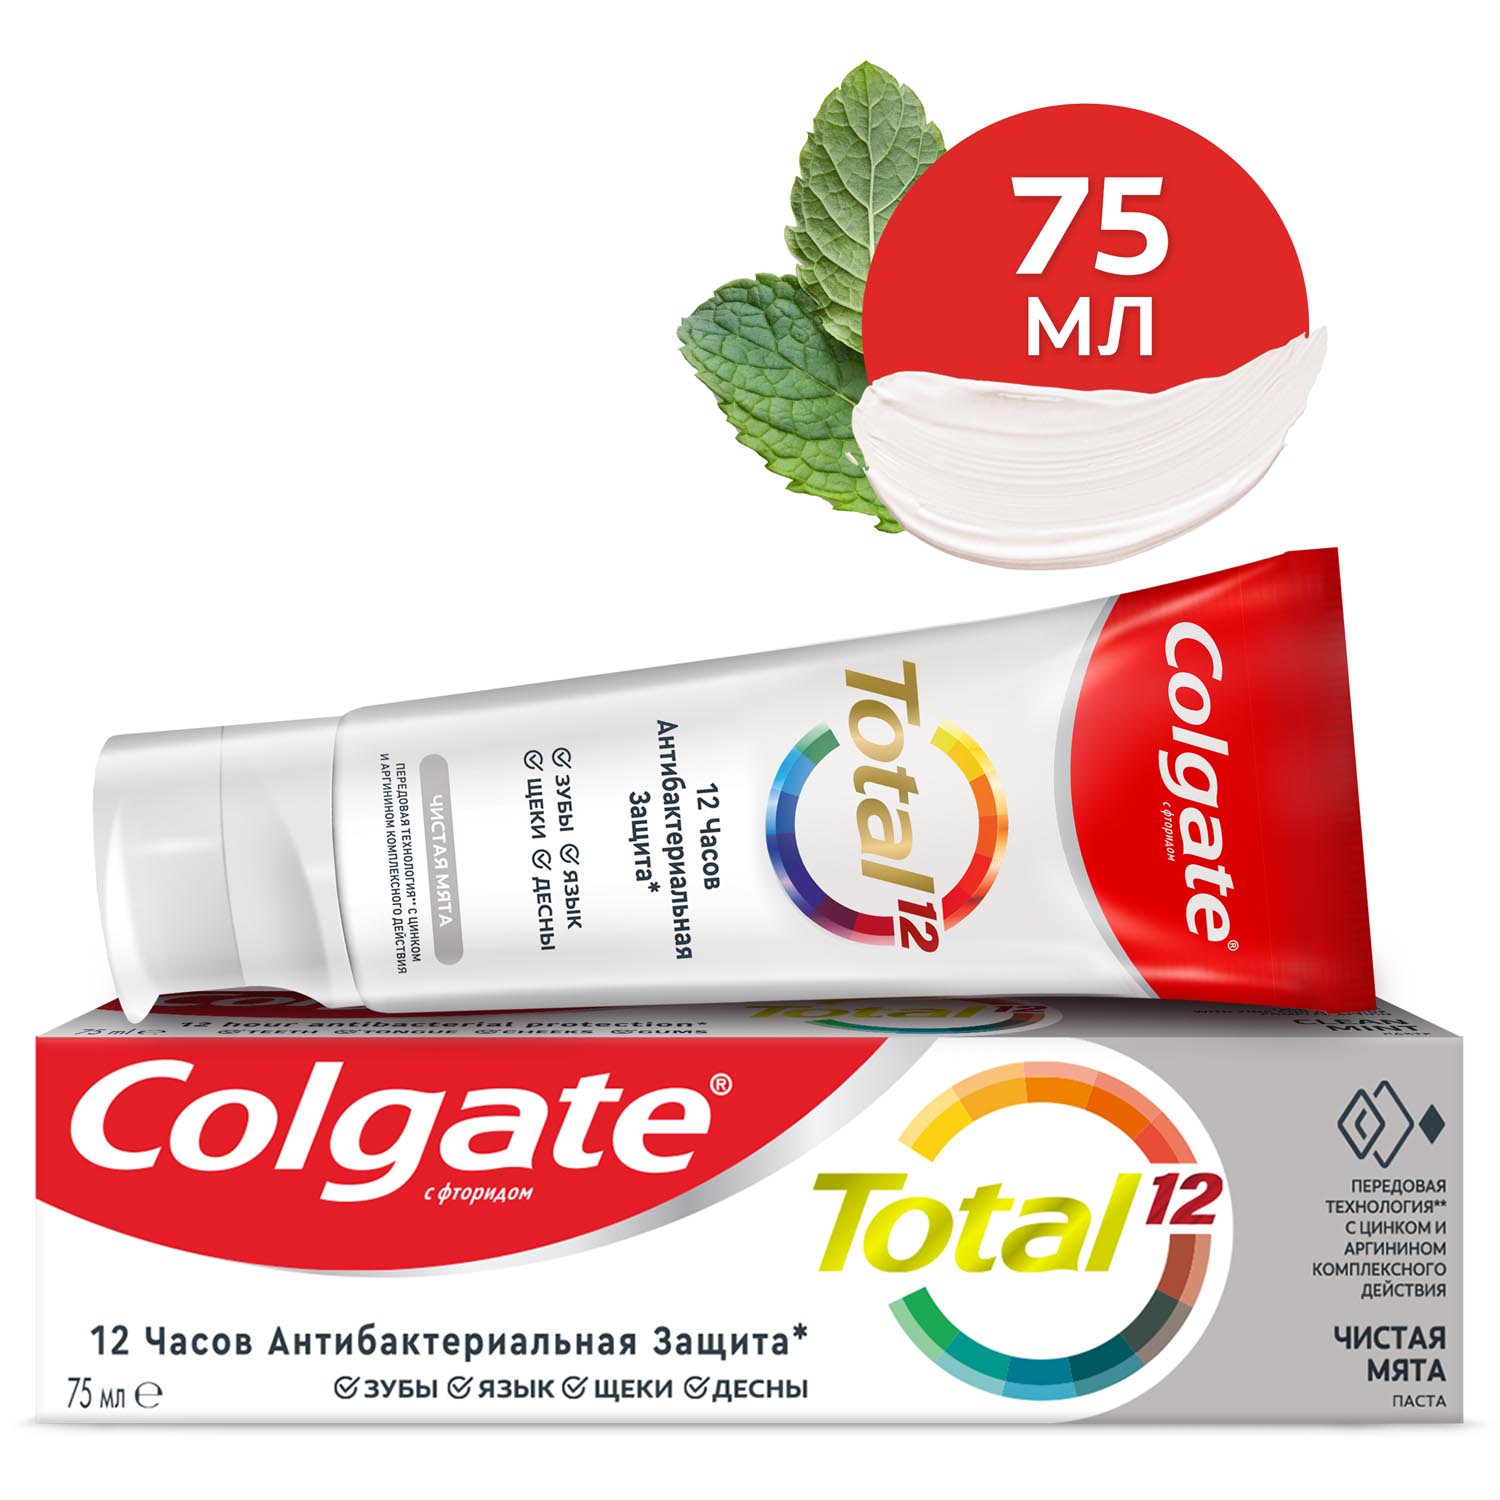 Зубная паста Colgate Total 12 Чистая мята с цинком и аргинином для комплексной антибактериальной защиты всей полости рта в течение 12 часов, 75 мл wp content